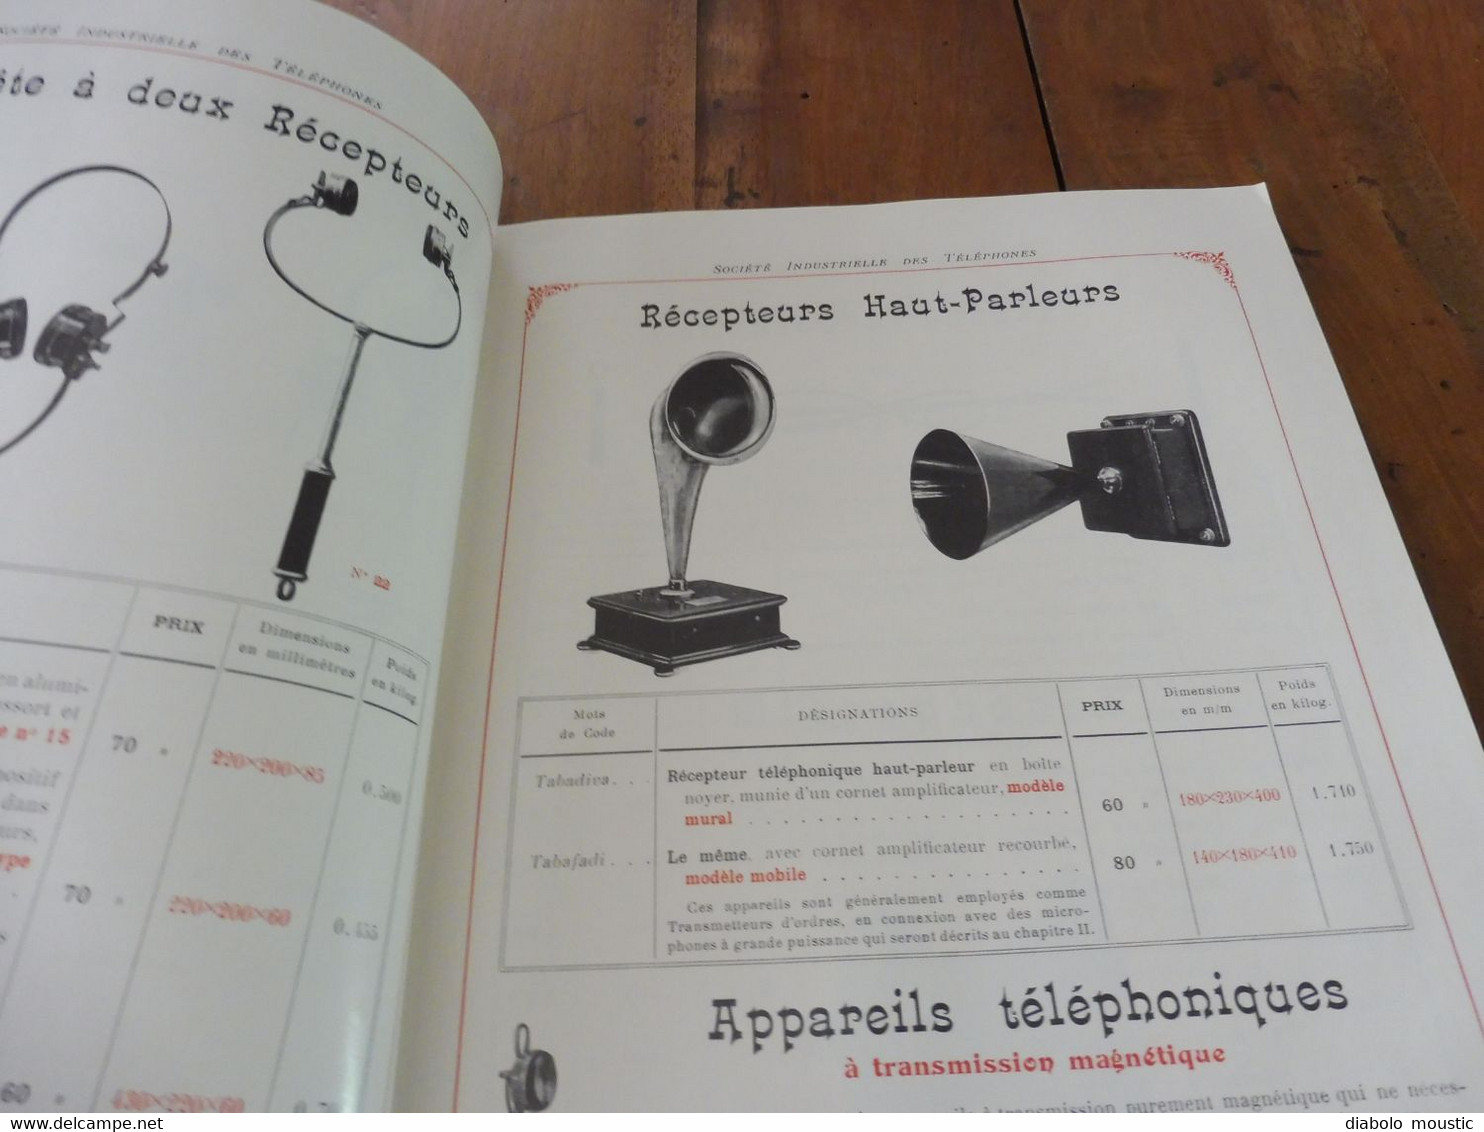 1909  Catalogue ancien CATALOGUE GÉNÉRAL de TÉLÉPHONIE (Société Industrielle des Téléphones)